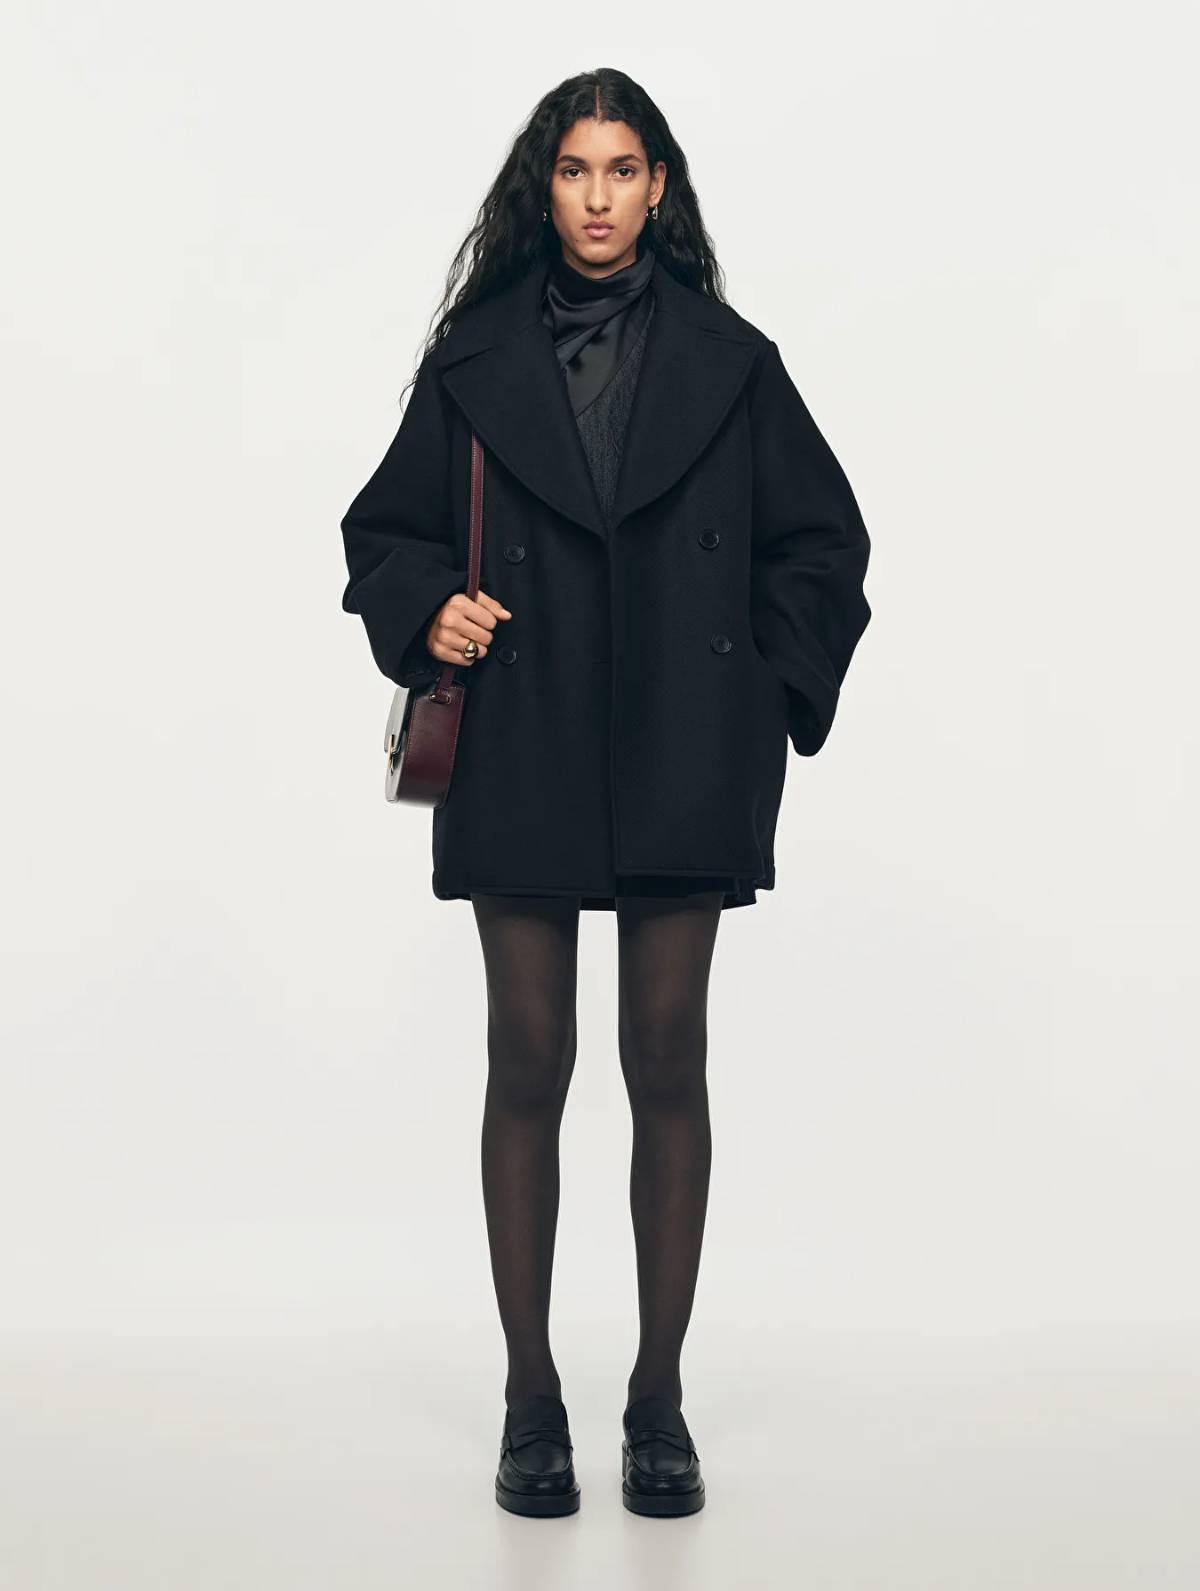 Arket Holiday Essentials Black Wool Pea Coat, ARKET Burgundy Leather Shoulder Bag